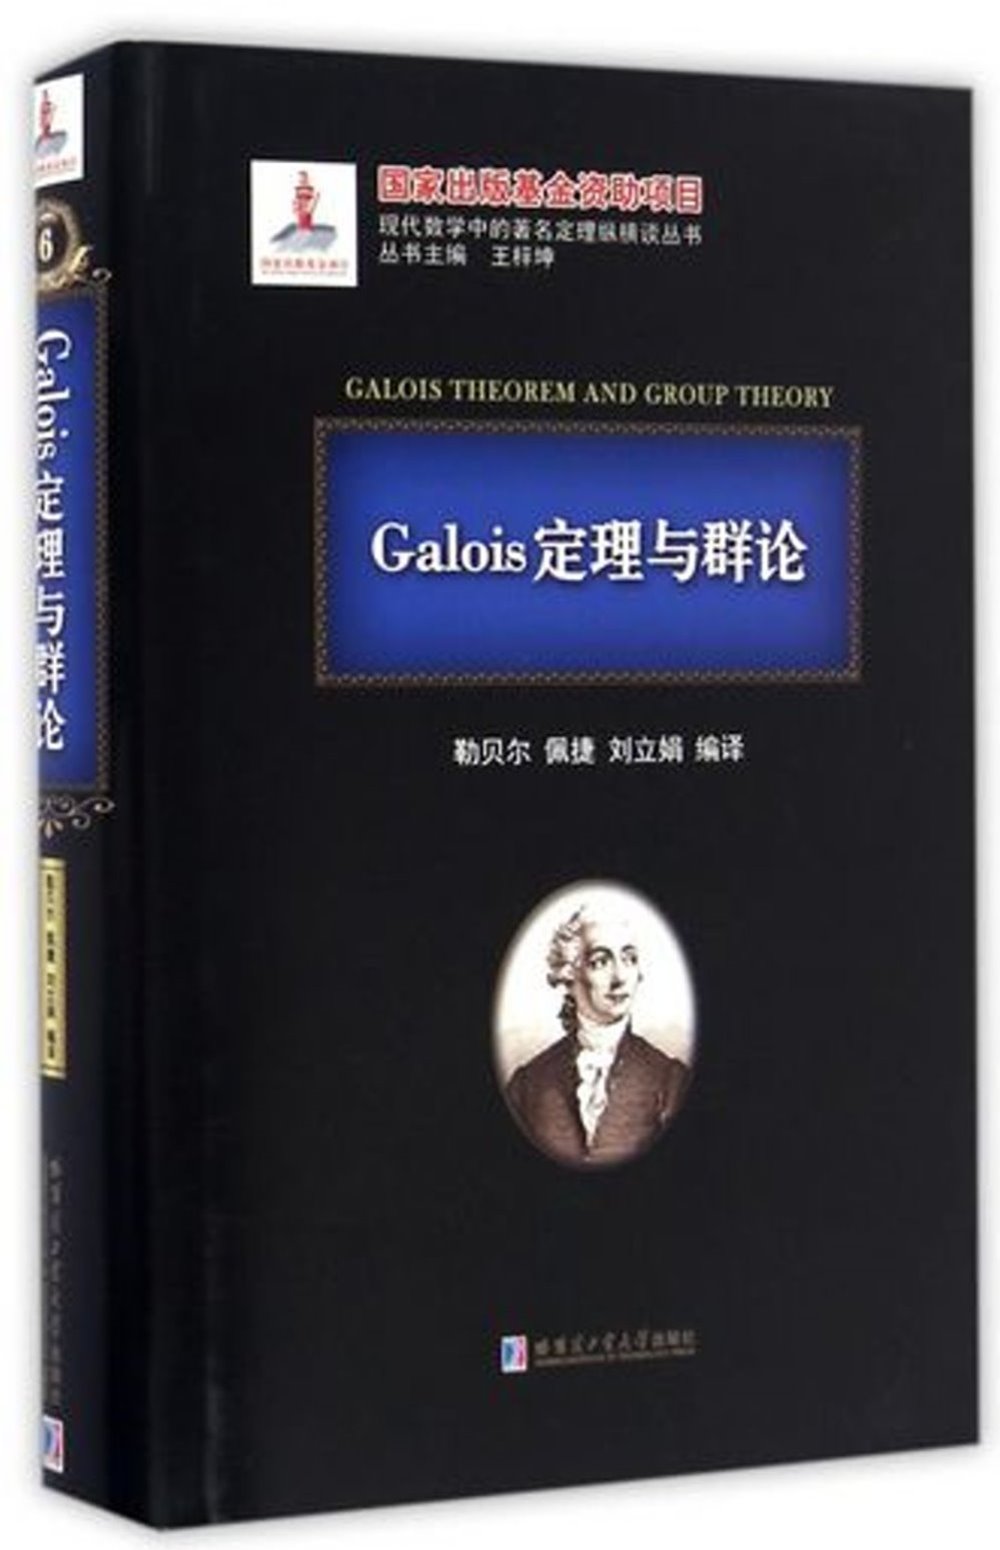 Galois定理與群論